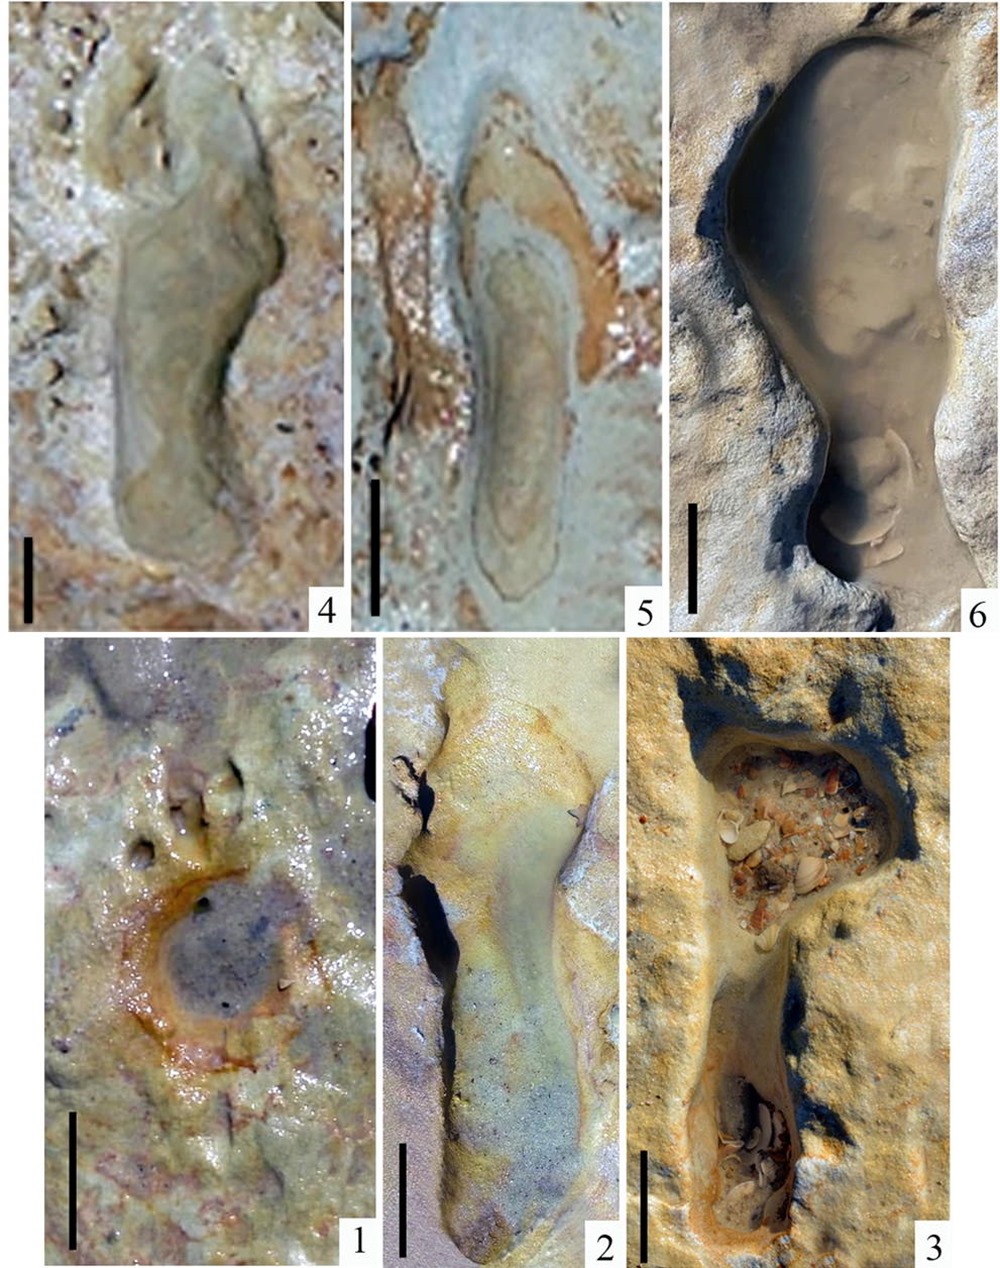 80 empreintes fossilisées de pas néandertaliens laissées sur une plage du sud de l'Espagne ont été étudiées récemment par des paléoanthropologues et ns offrent d'émouvants témoignages de leur vie balnéaire il y a 80k ans